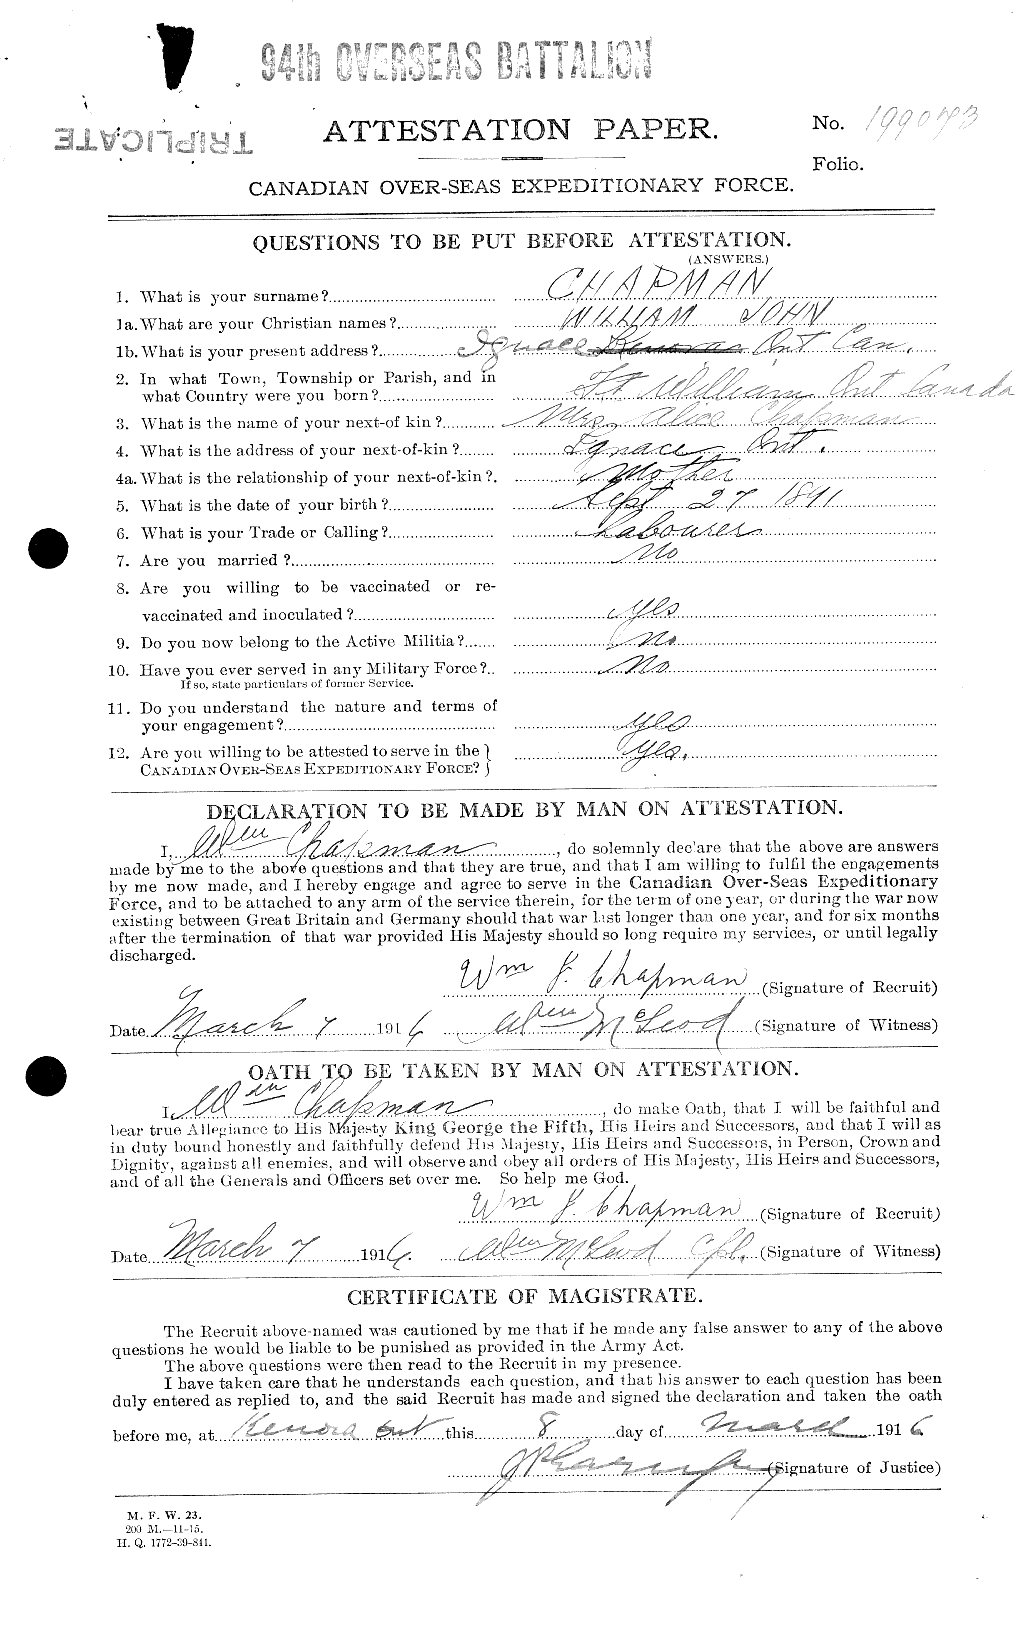 Dossiers du Personnel de la Première Guerre mondiale - CEC 014870a